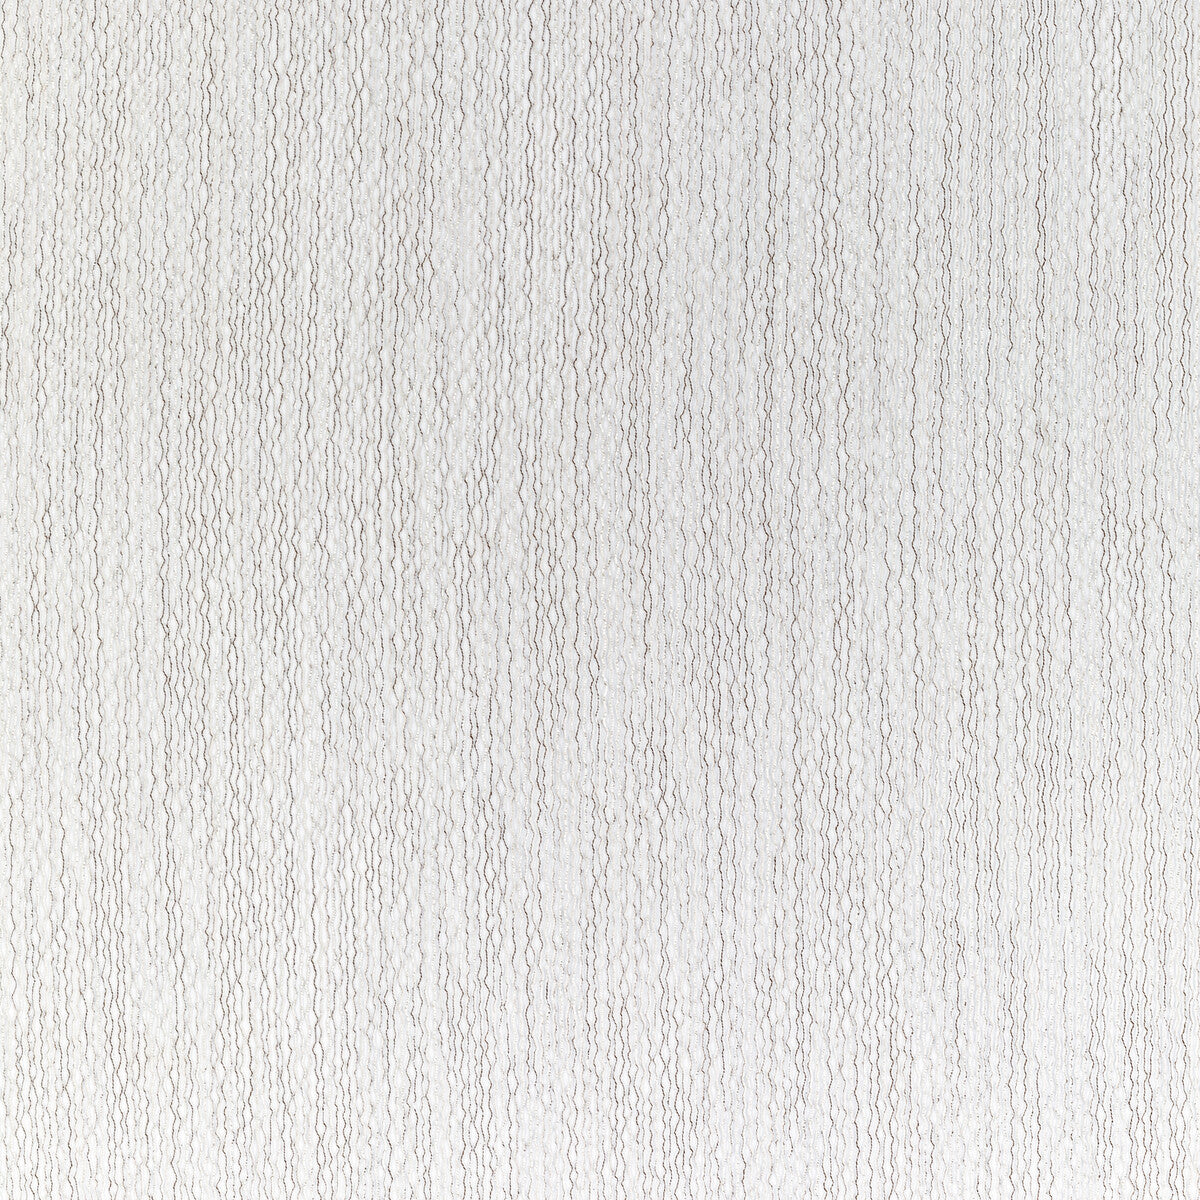 Kravet Basics fabric in 4871-111 color - pattern 4871.111.0 - by Kravet Basics